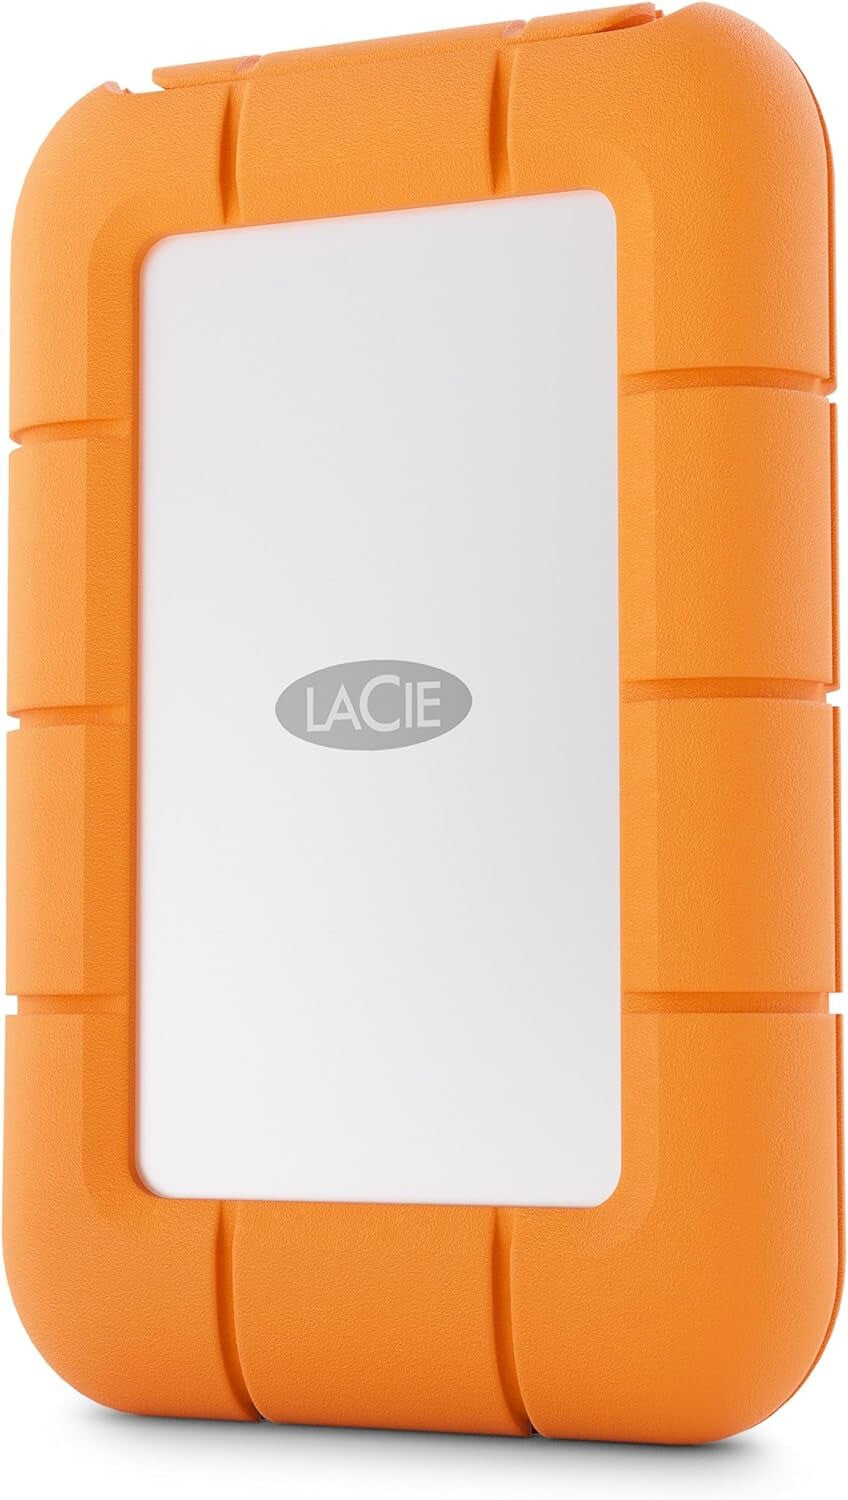 LaCie Rugged Mini - USB-C External HDD in Grey / Orange - 4 TB